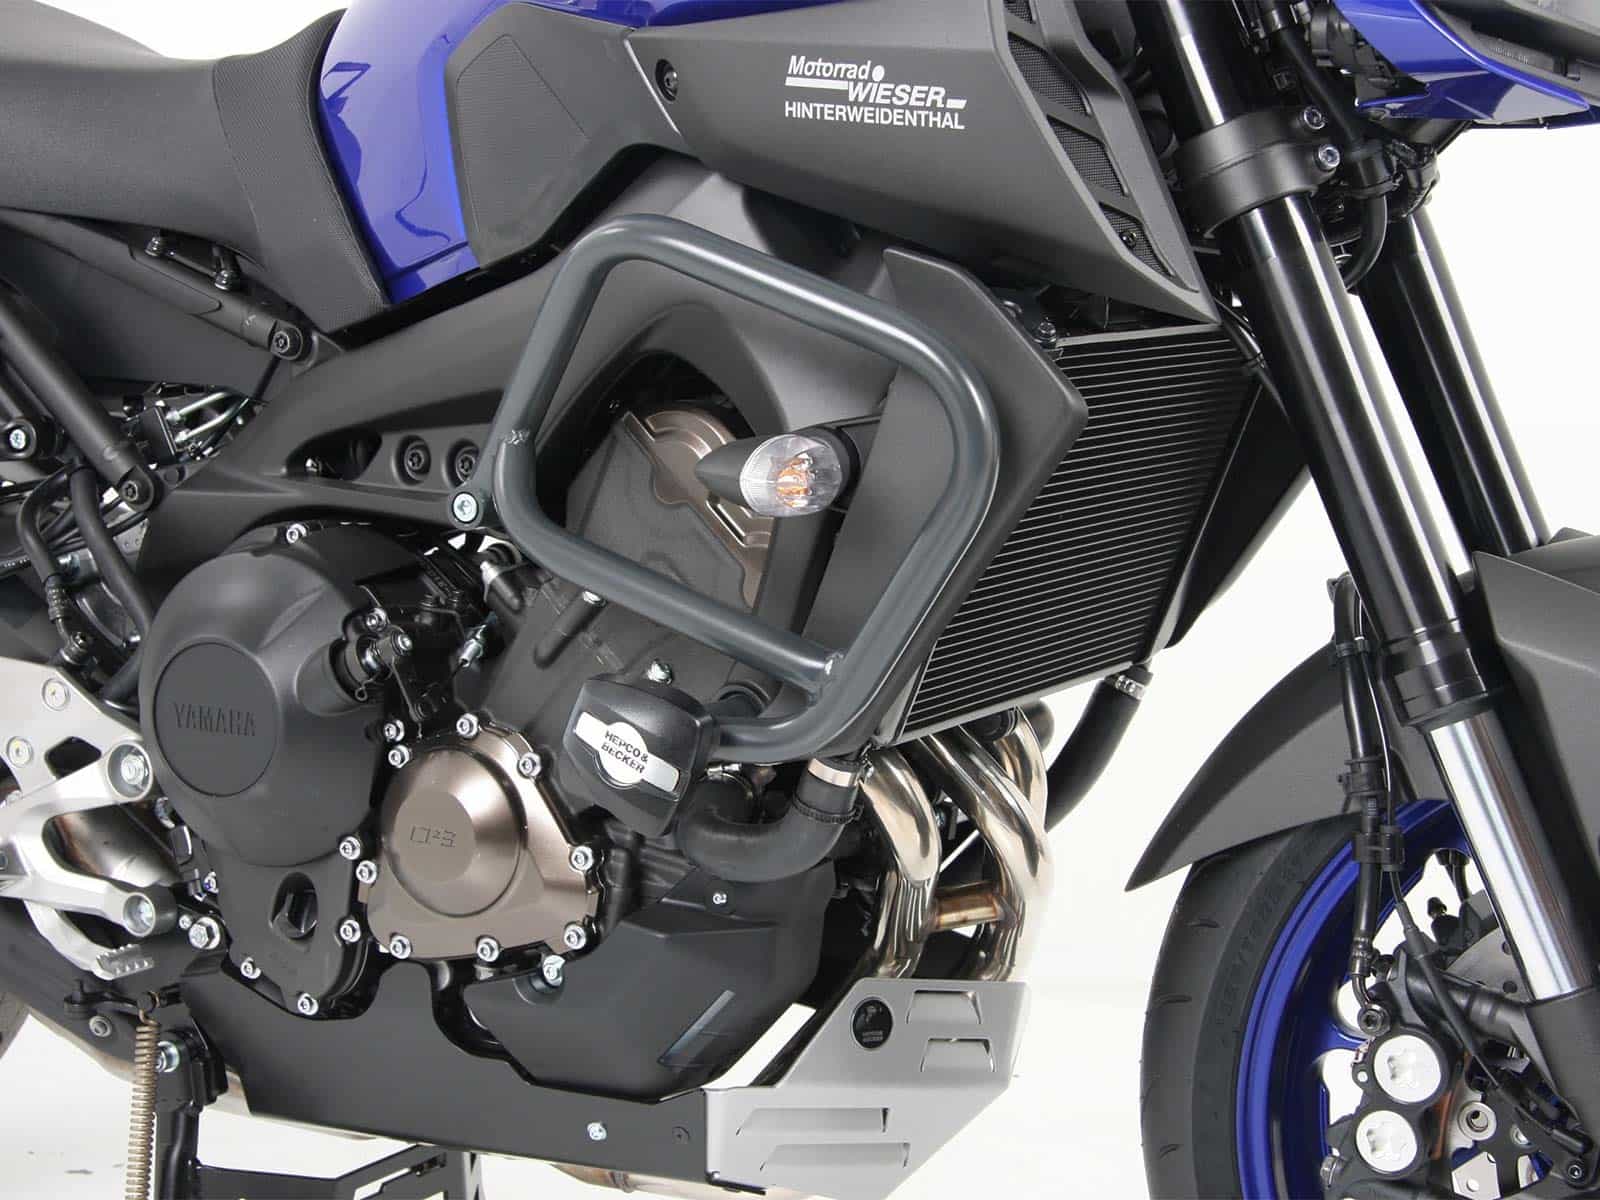 Motorschutzbügel inkl. Protectionpad anthrazit für Yamaha MT-09 (2017-2020)